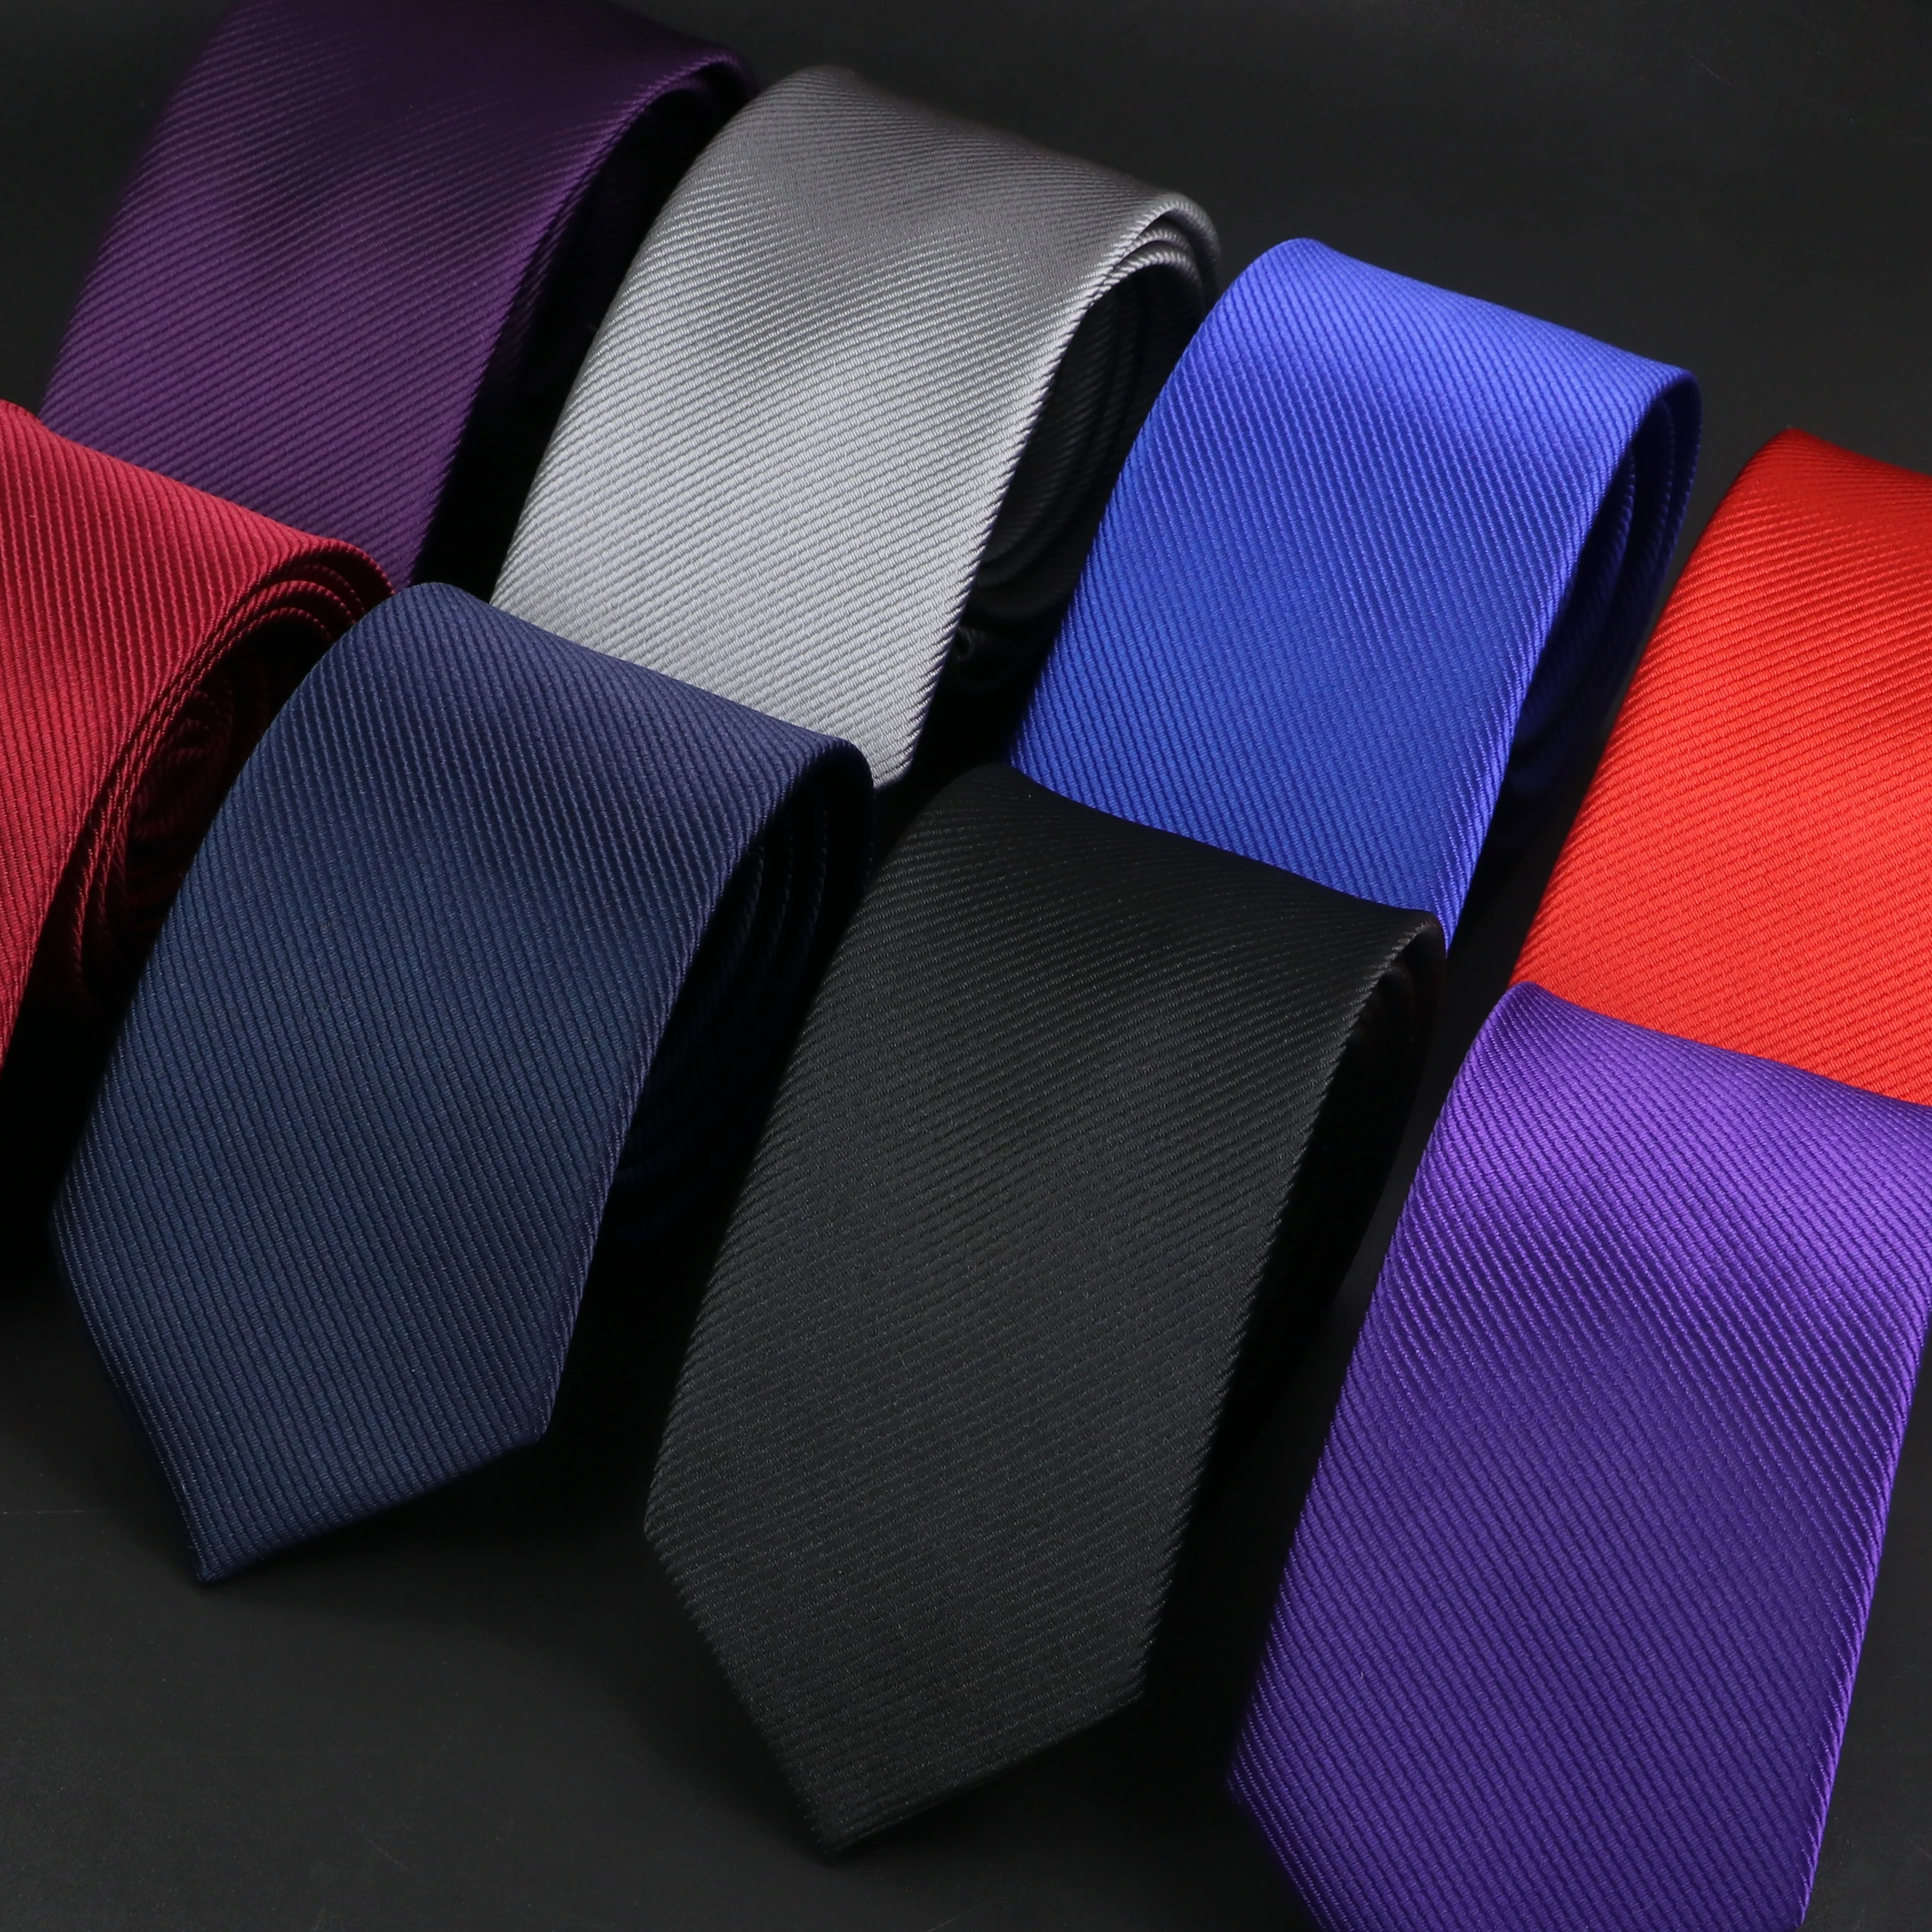 Новый простой классический мужской галстук серый зеленый синий красный красочный узкий галстук для мужчин для свадебной вечеринки аксессуар для работы подарок